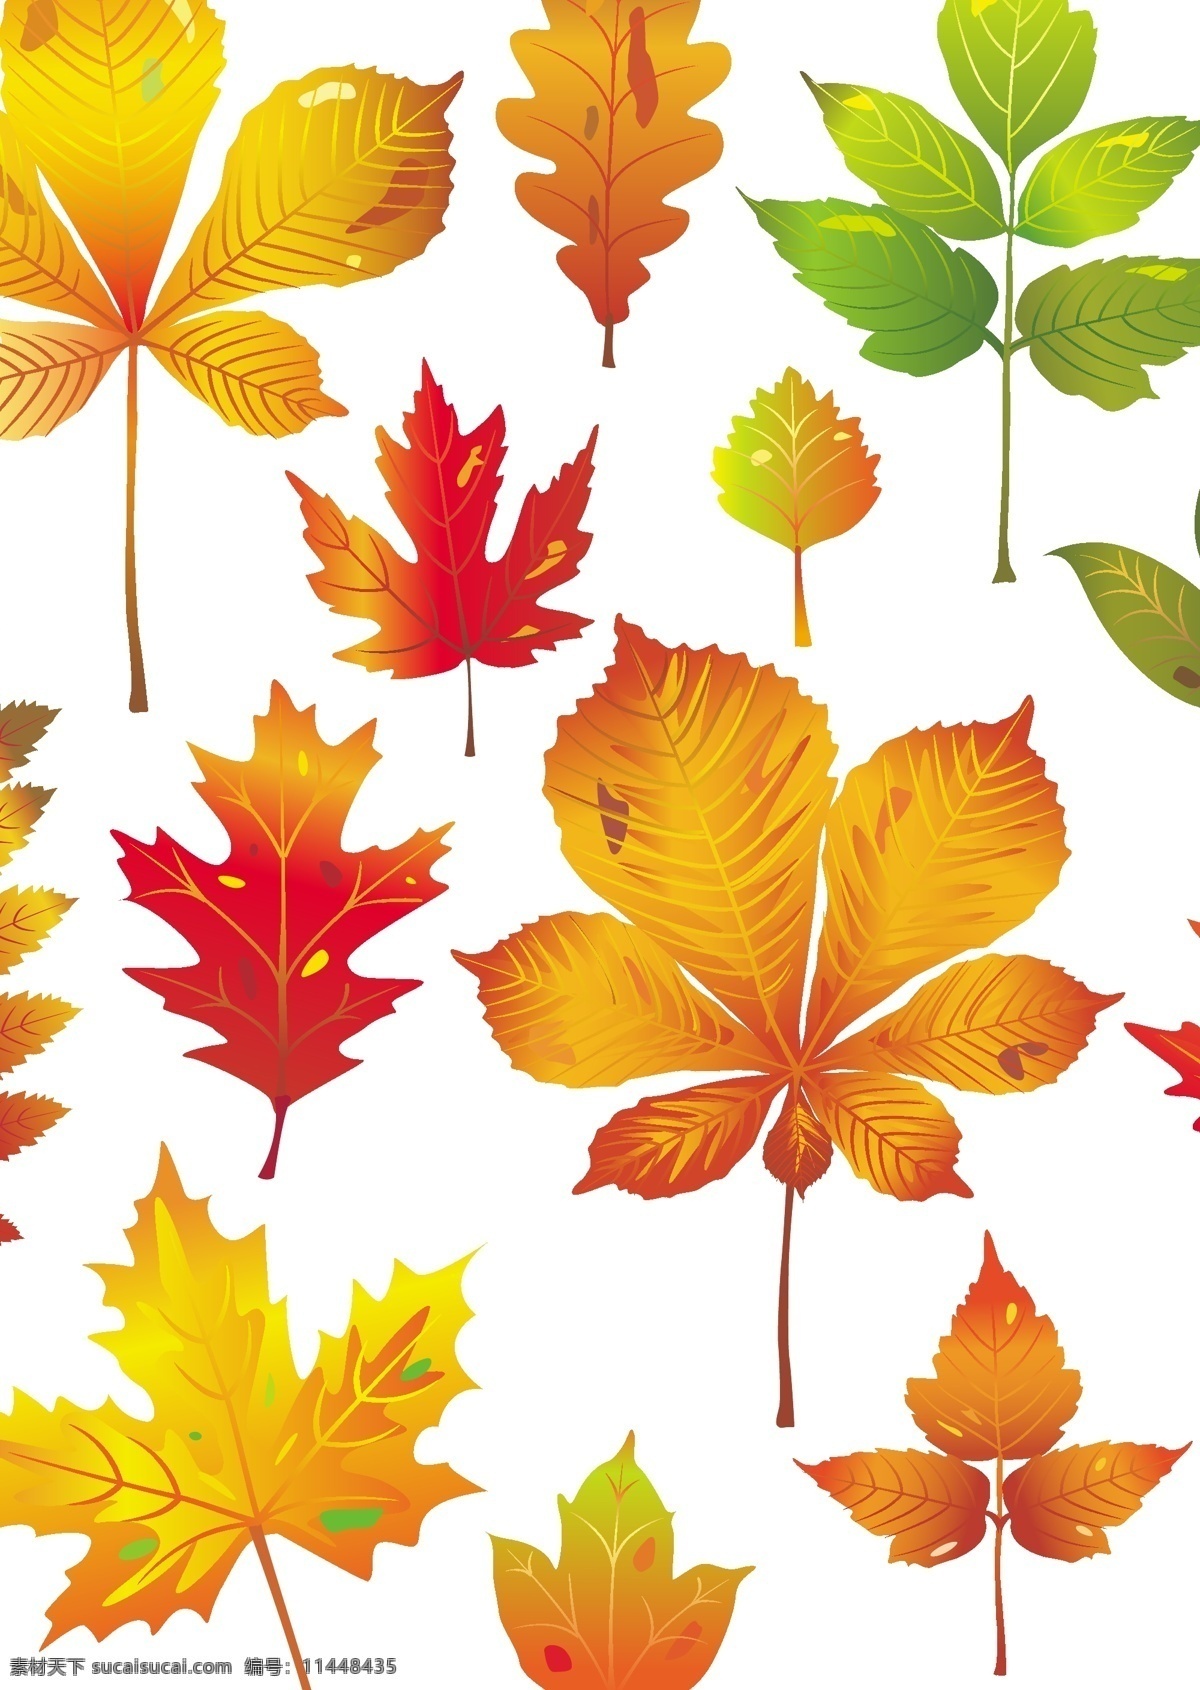 秋天 树叶 矢量 背景图片 枫叶 红叶 模板 飘落 设计稿 矢量素材 素材元素 叶片 秋季树叶 源文件 矢量图